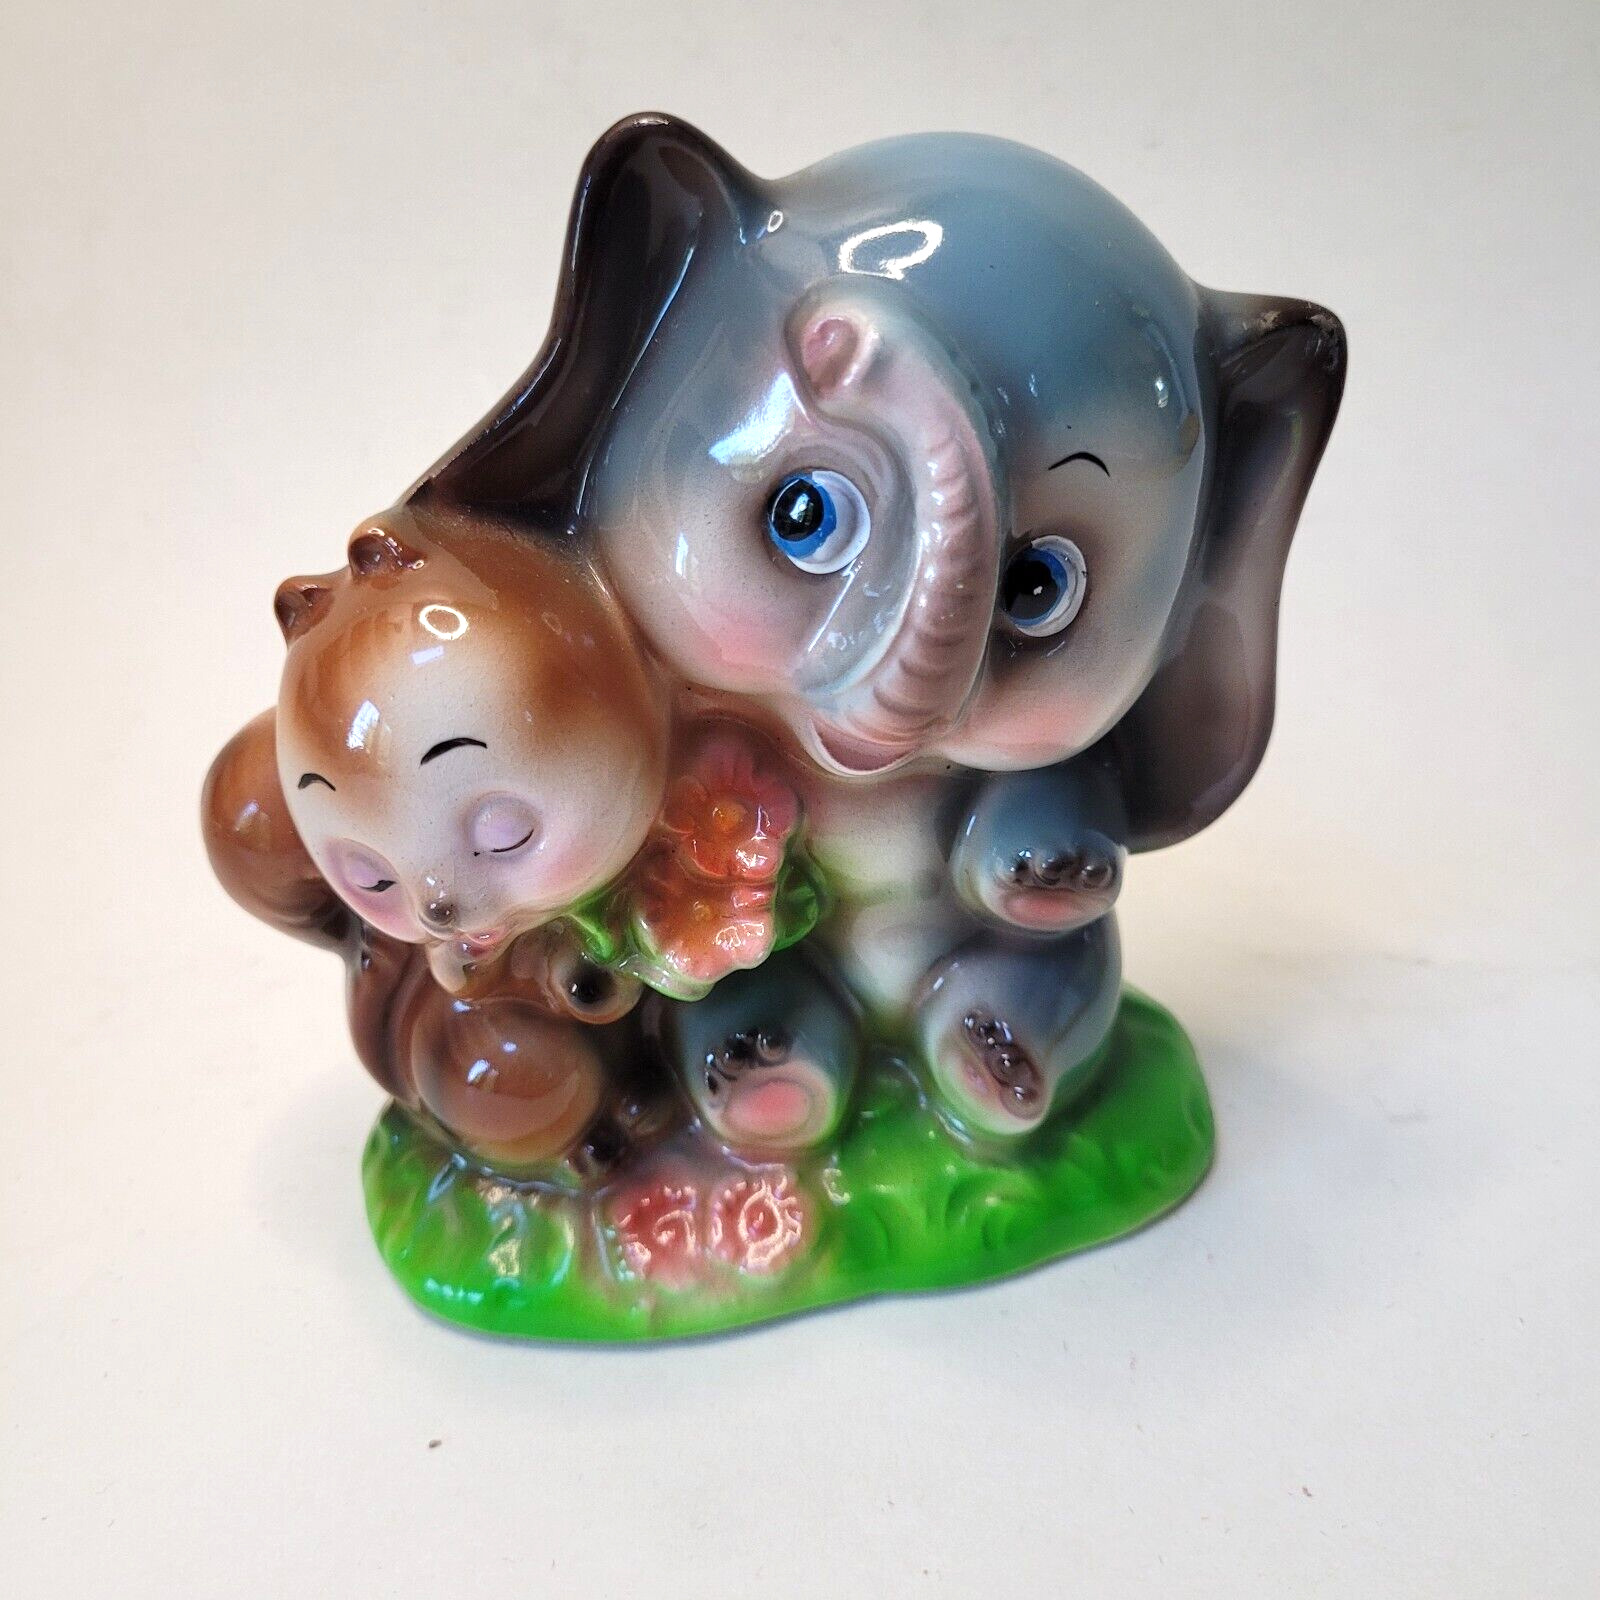 Vintage Big Eyes Elephant & Squirrel Ceramic Figurine Anthropomorphic Kitsch